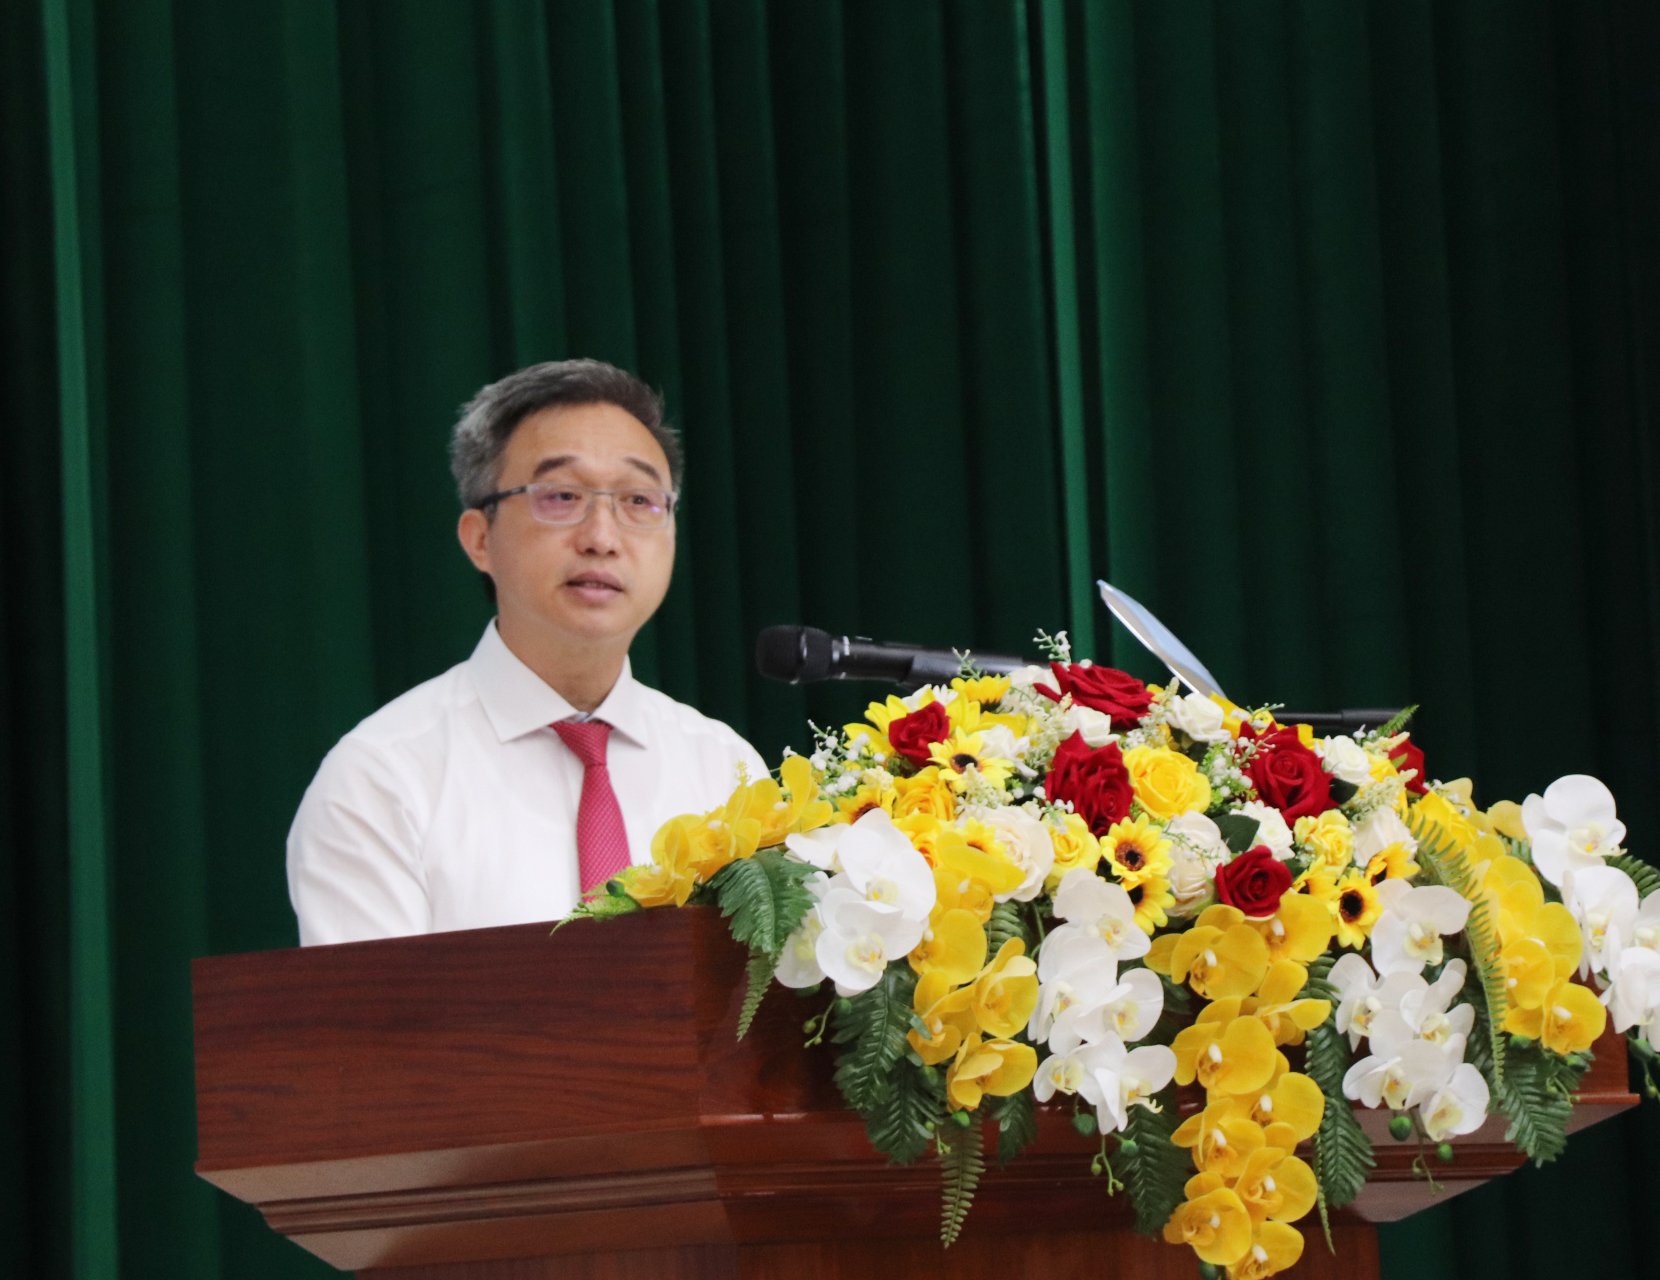 Ông Đặng Minh Thông, Ủy viên Ban Thường vụ Tỉnh ủy, Bí thư Thành ủy, Chủ tịch HĐND TP. Bà Rịa phát biểu chỉ đạo tại Đại hội.